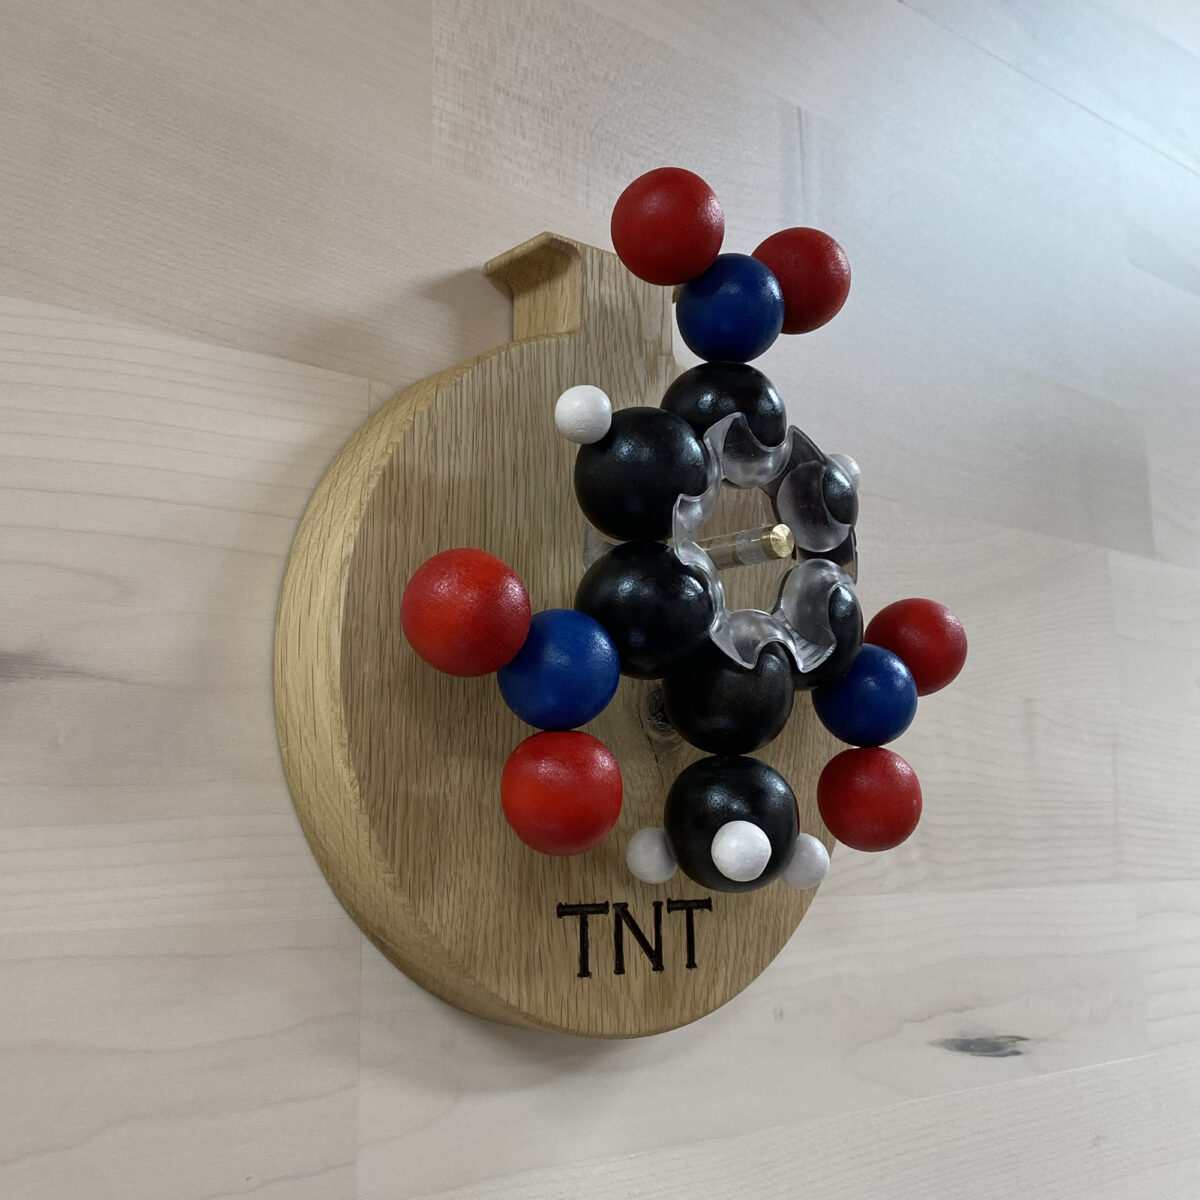 TNT molecule model